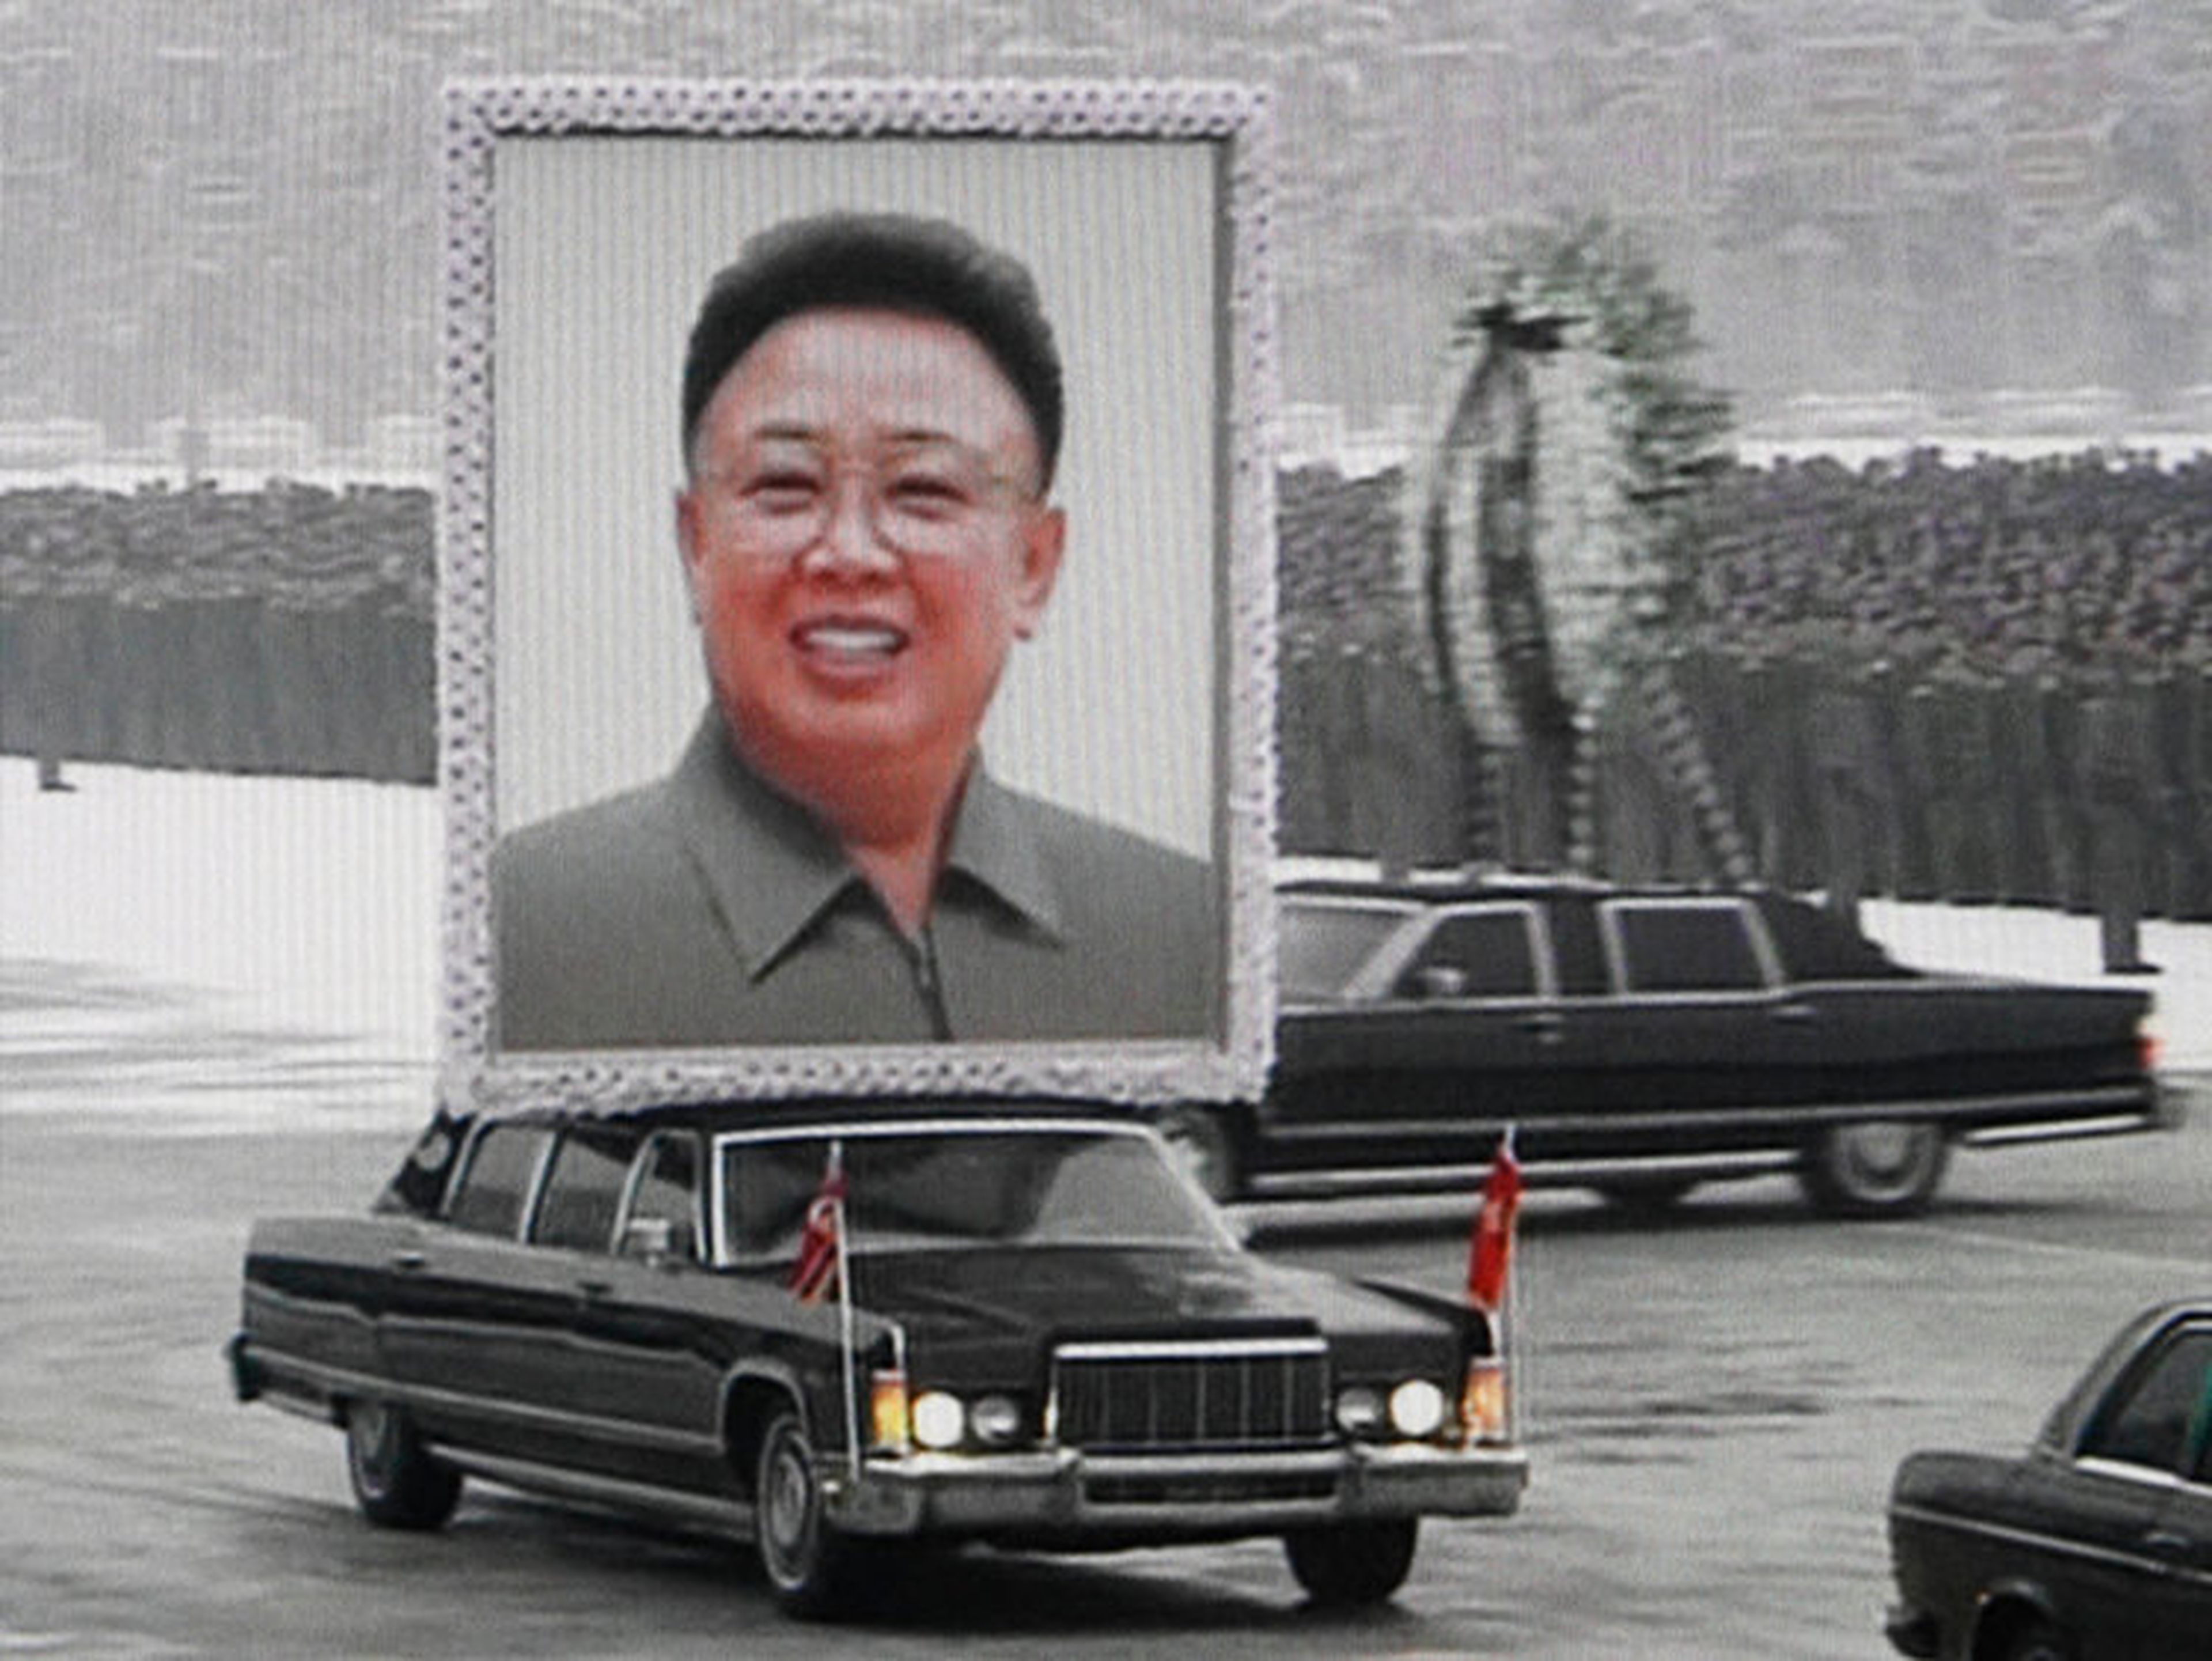 Una limusina transporta un retrato de Kim Jon-il liderando la procesión de su funeral entre las masas en una calle en Pyongyang en esta imagen sacada de un video del 28 de diciembre de 2011.